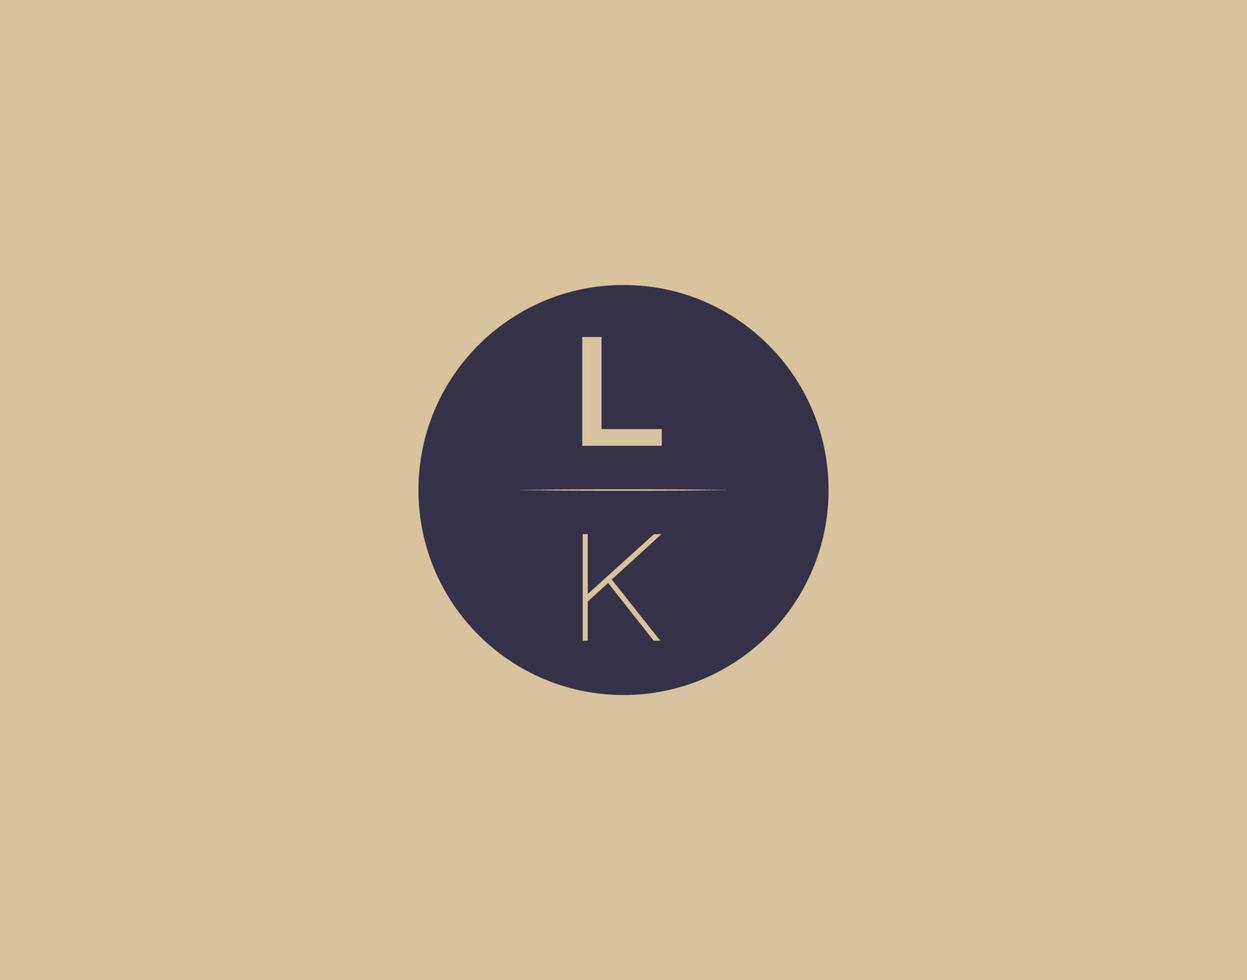 imagens vetoriais de design de logotipo moderno e elegante da carta lk vetor